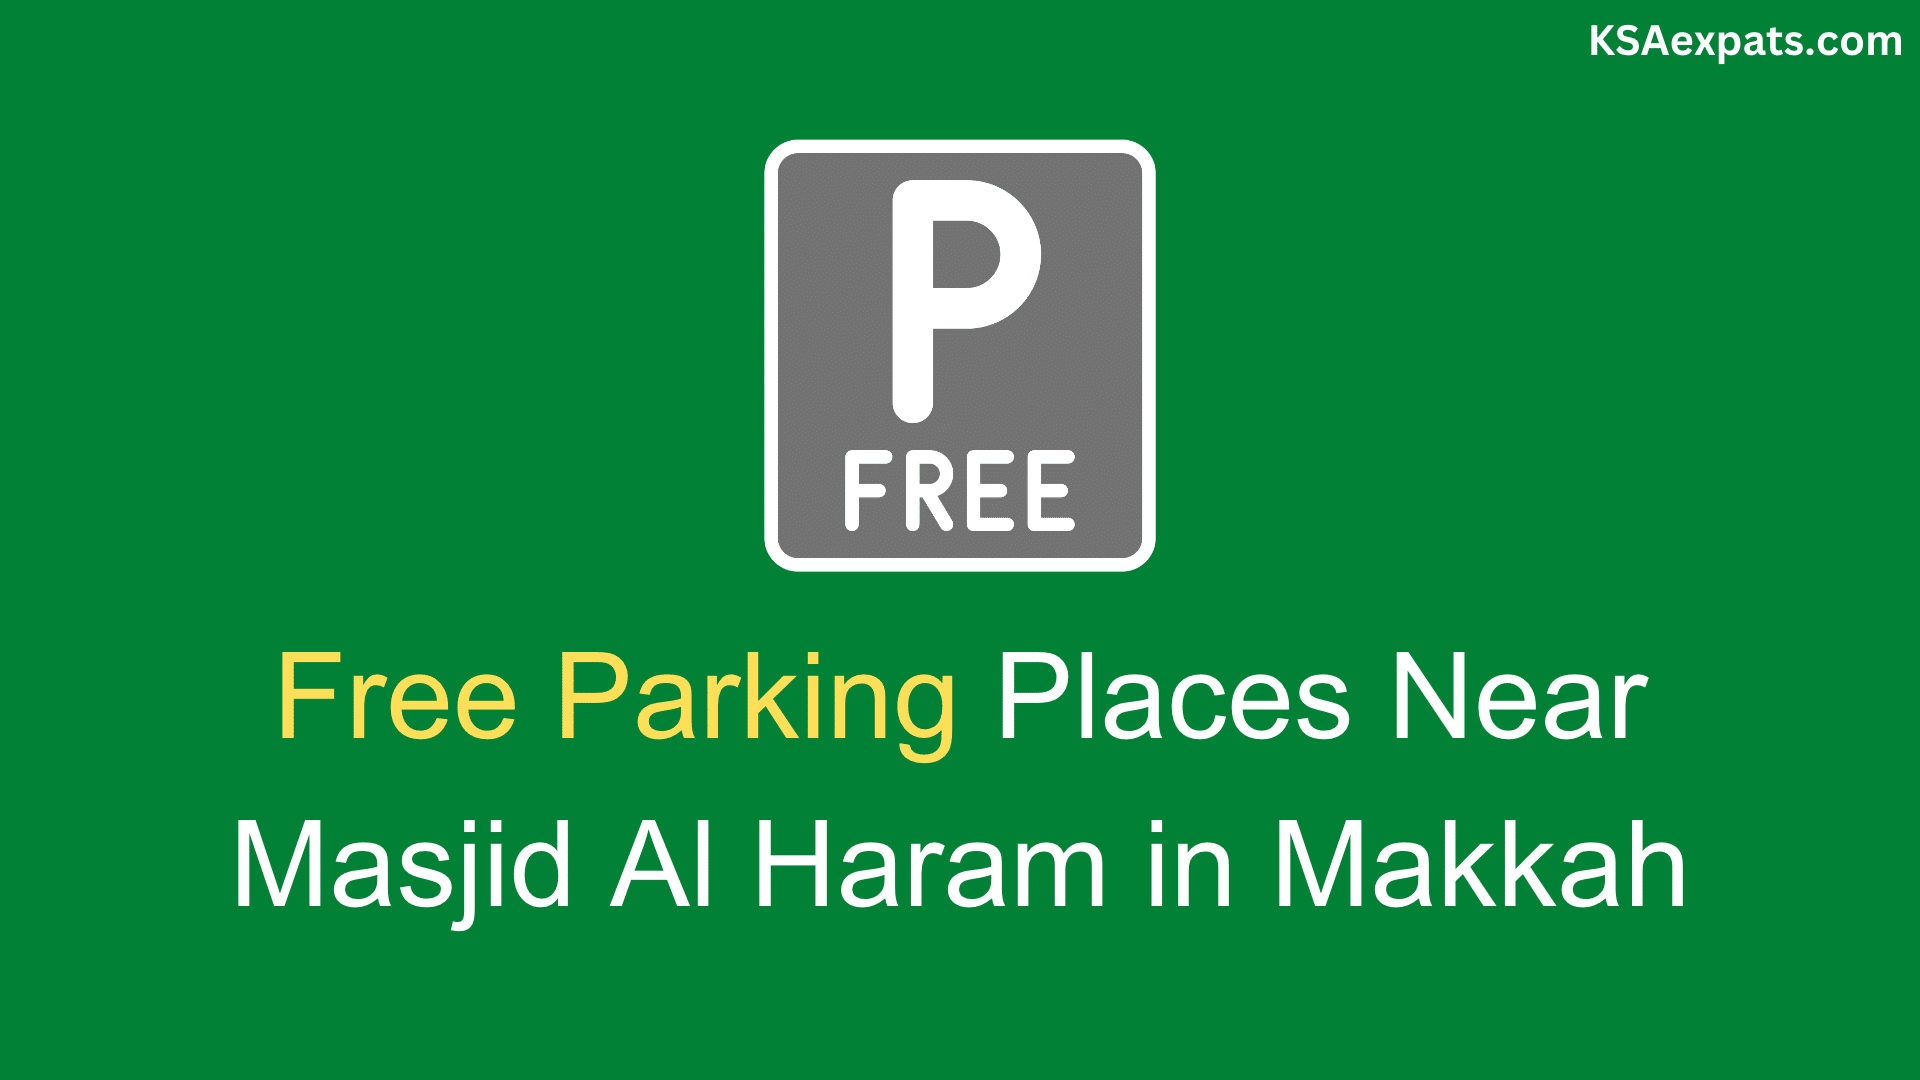 Free Parking Places Near Masjid Al Haram in Makkah